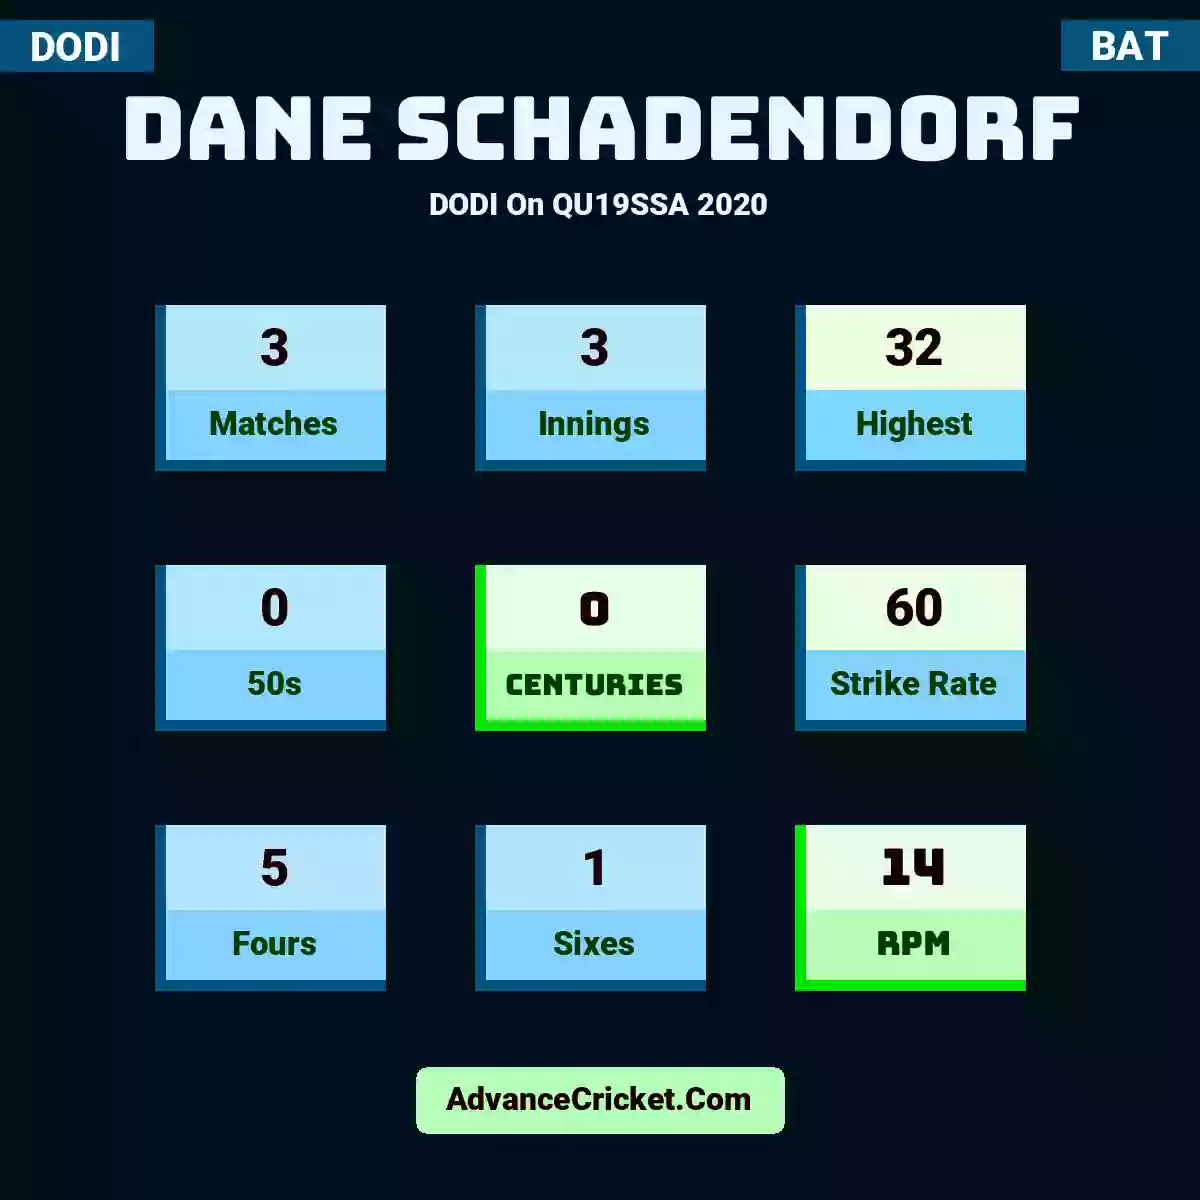 Dane Schadendorf DODI  On QU19SSA 2020, Dane Schadendorf played 3 matches, scored 32 runs as highest, 0 half-centuries, and 0 centuries, with a strike rate of 60. D.Schadendorf hit 5 fours and 1 sixes, with an RPM of 14.